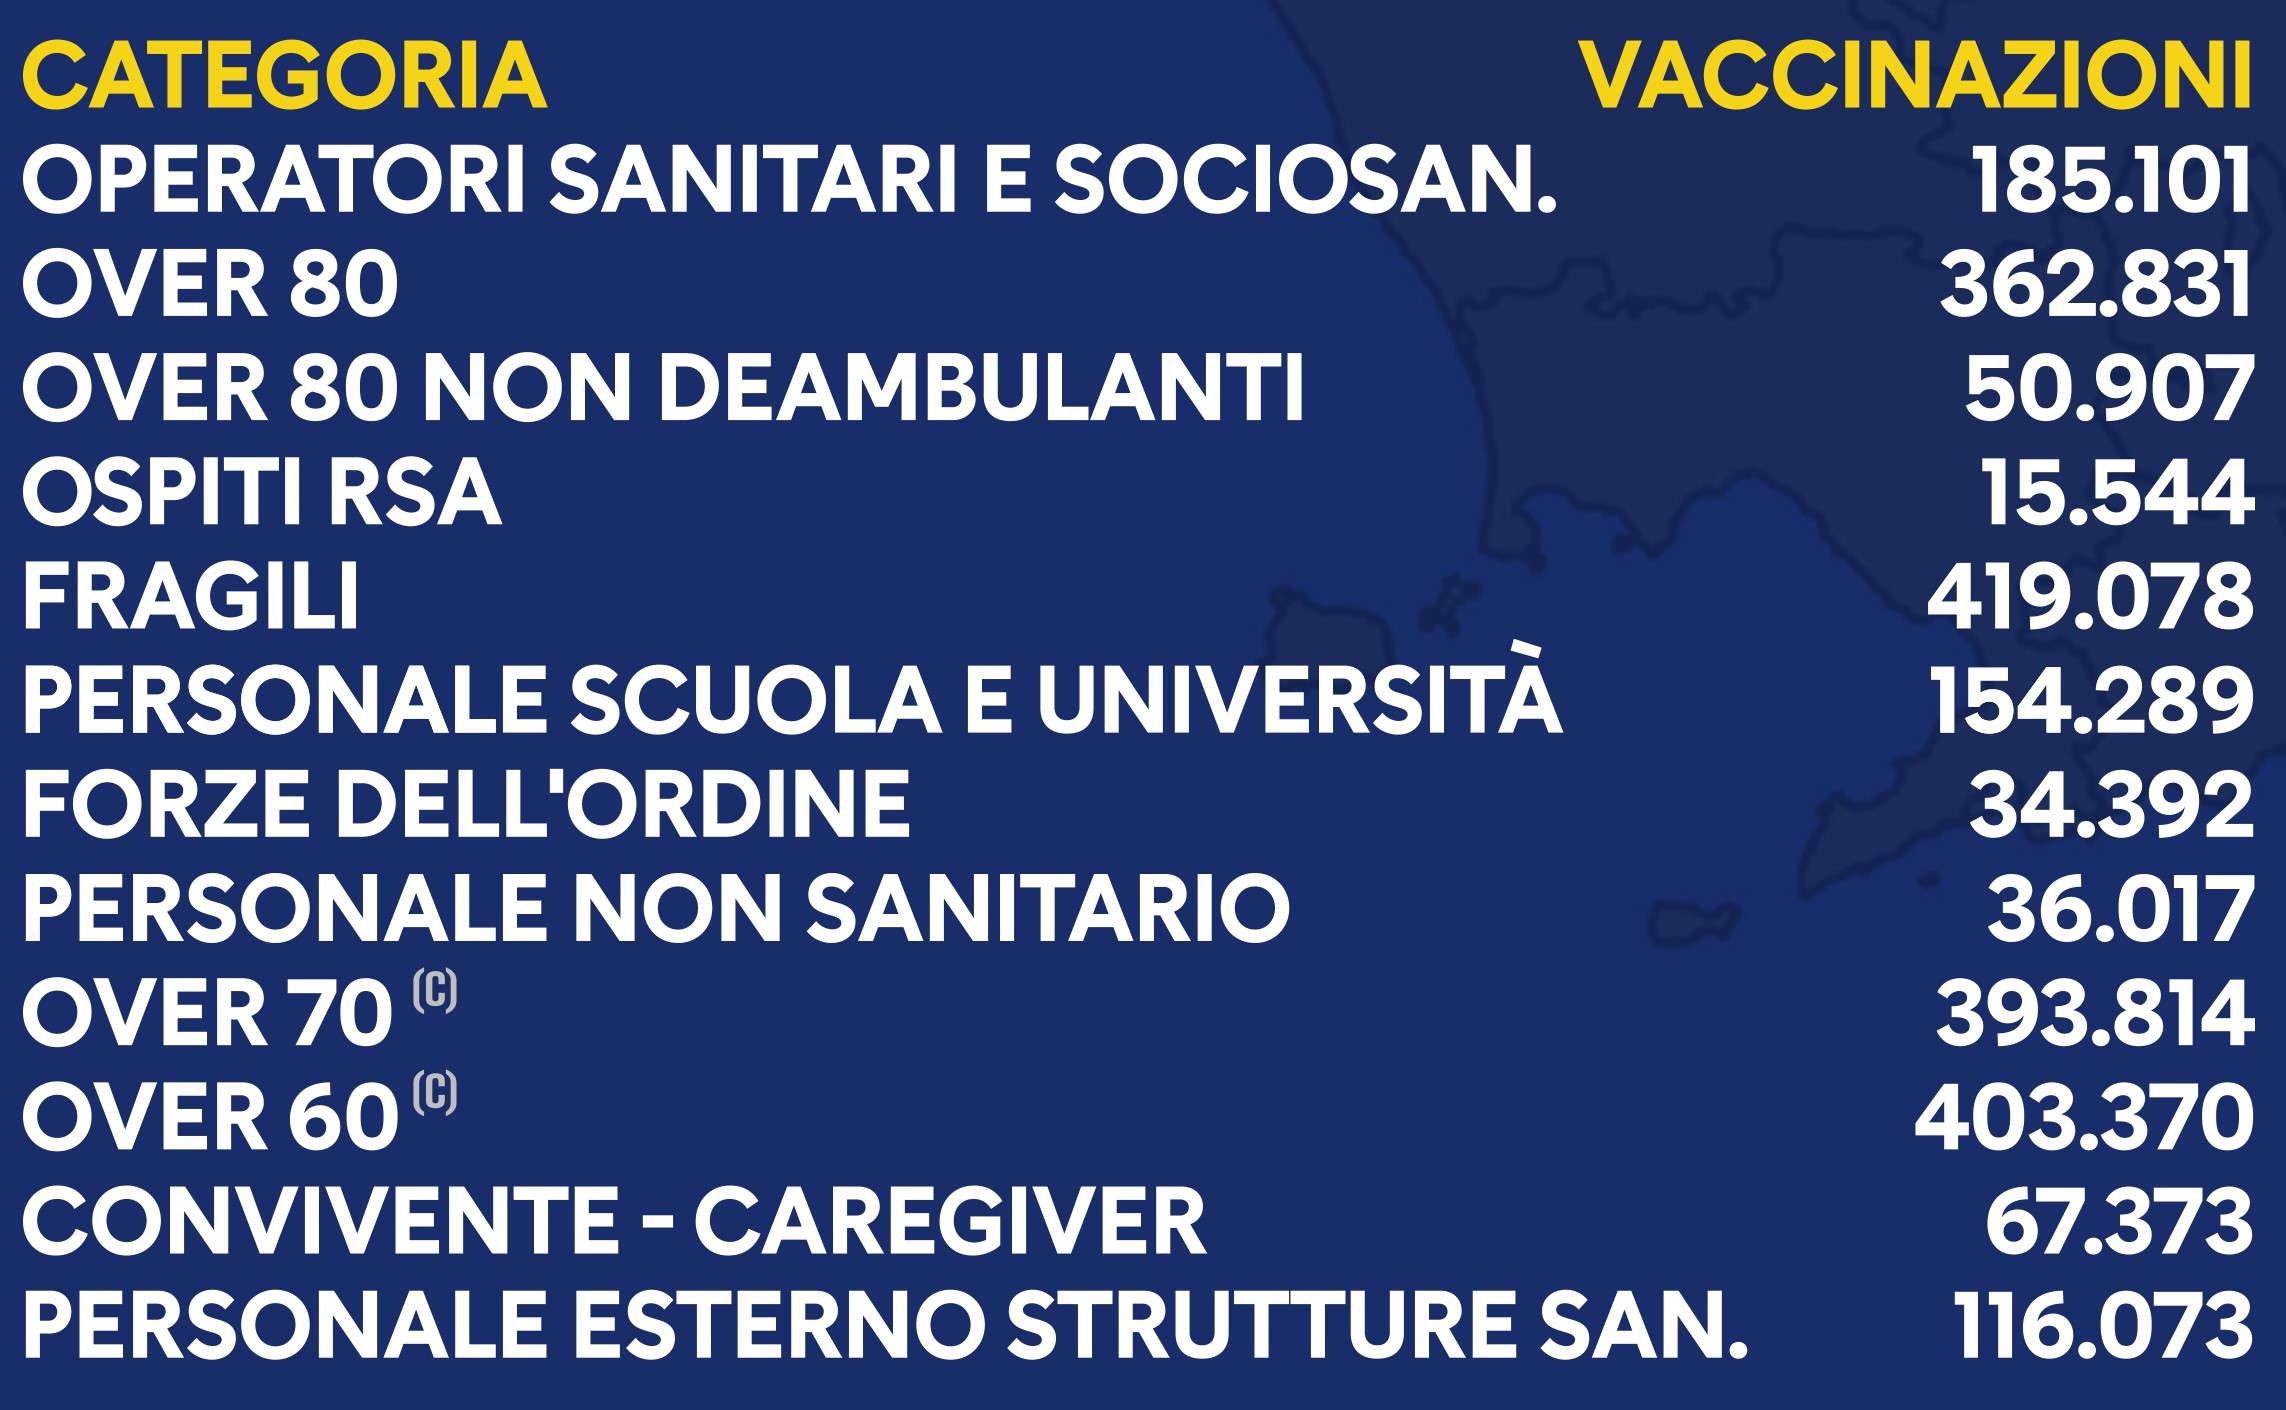 Regione Campania: Effettuate 1.891.451 vaccinazioni